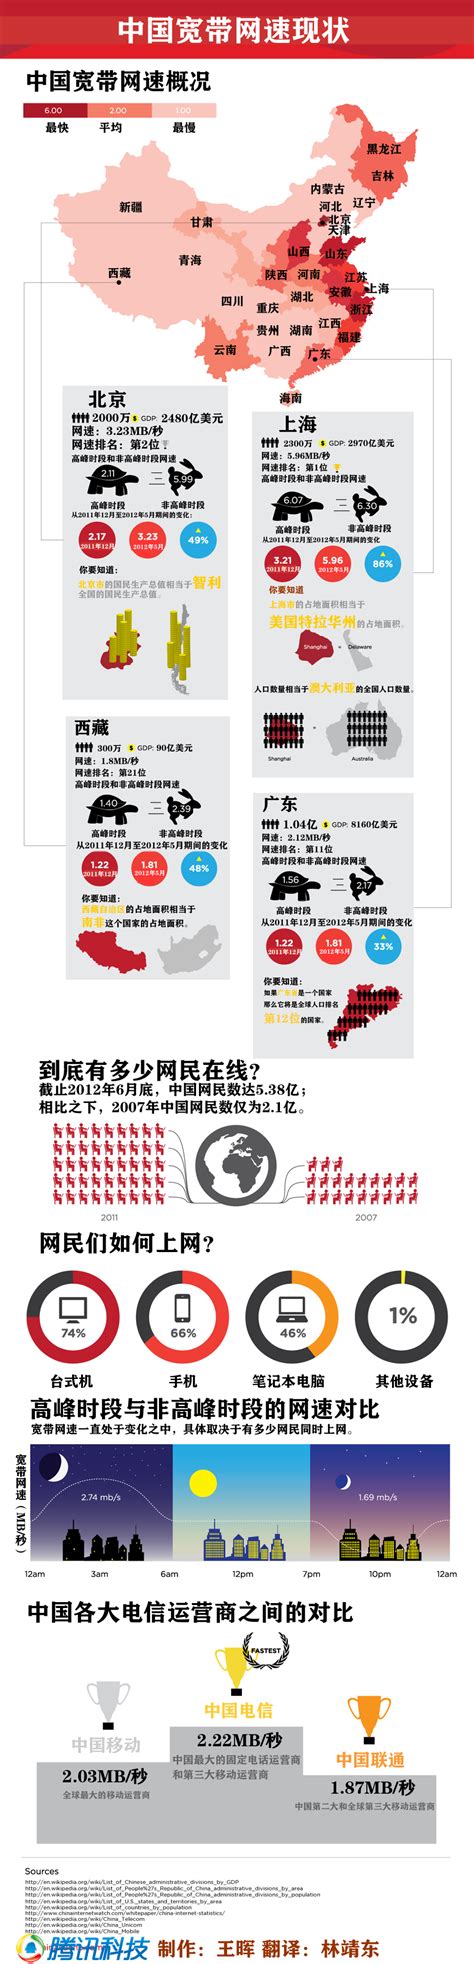 中国宽带下载平均速度逼近10M 上海排全国第一_天下_新闻中心_长江网_cjn.cn